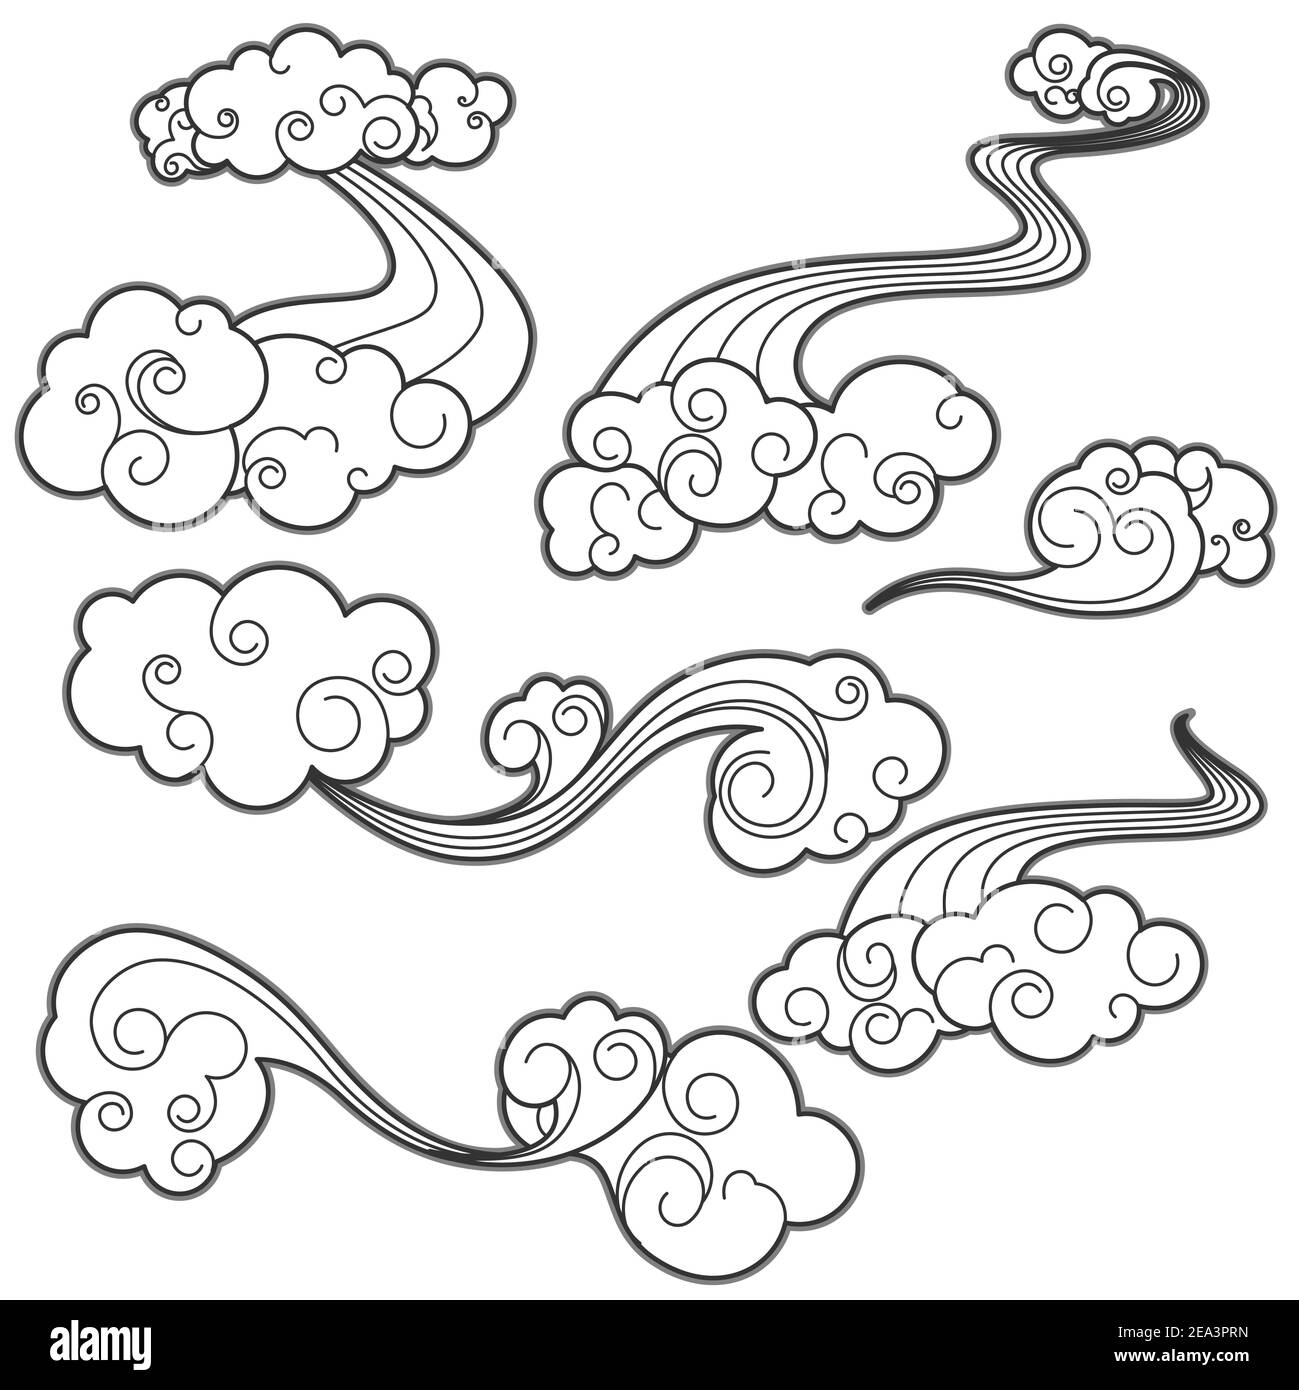 Jeu de nuages blancs dans un style de dessin animé pour la conception Illustration de Vecteur